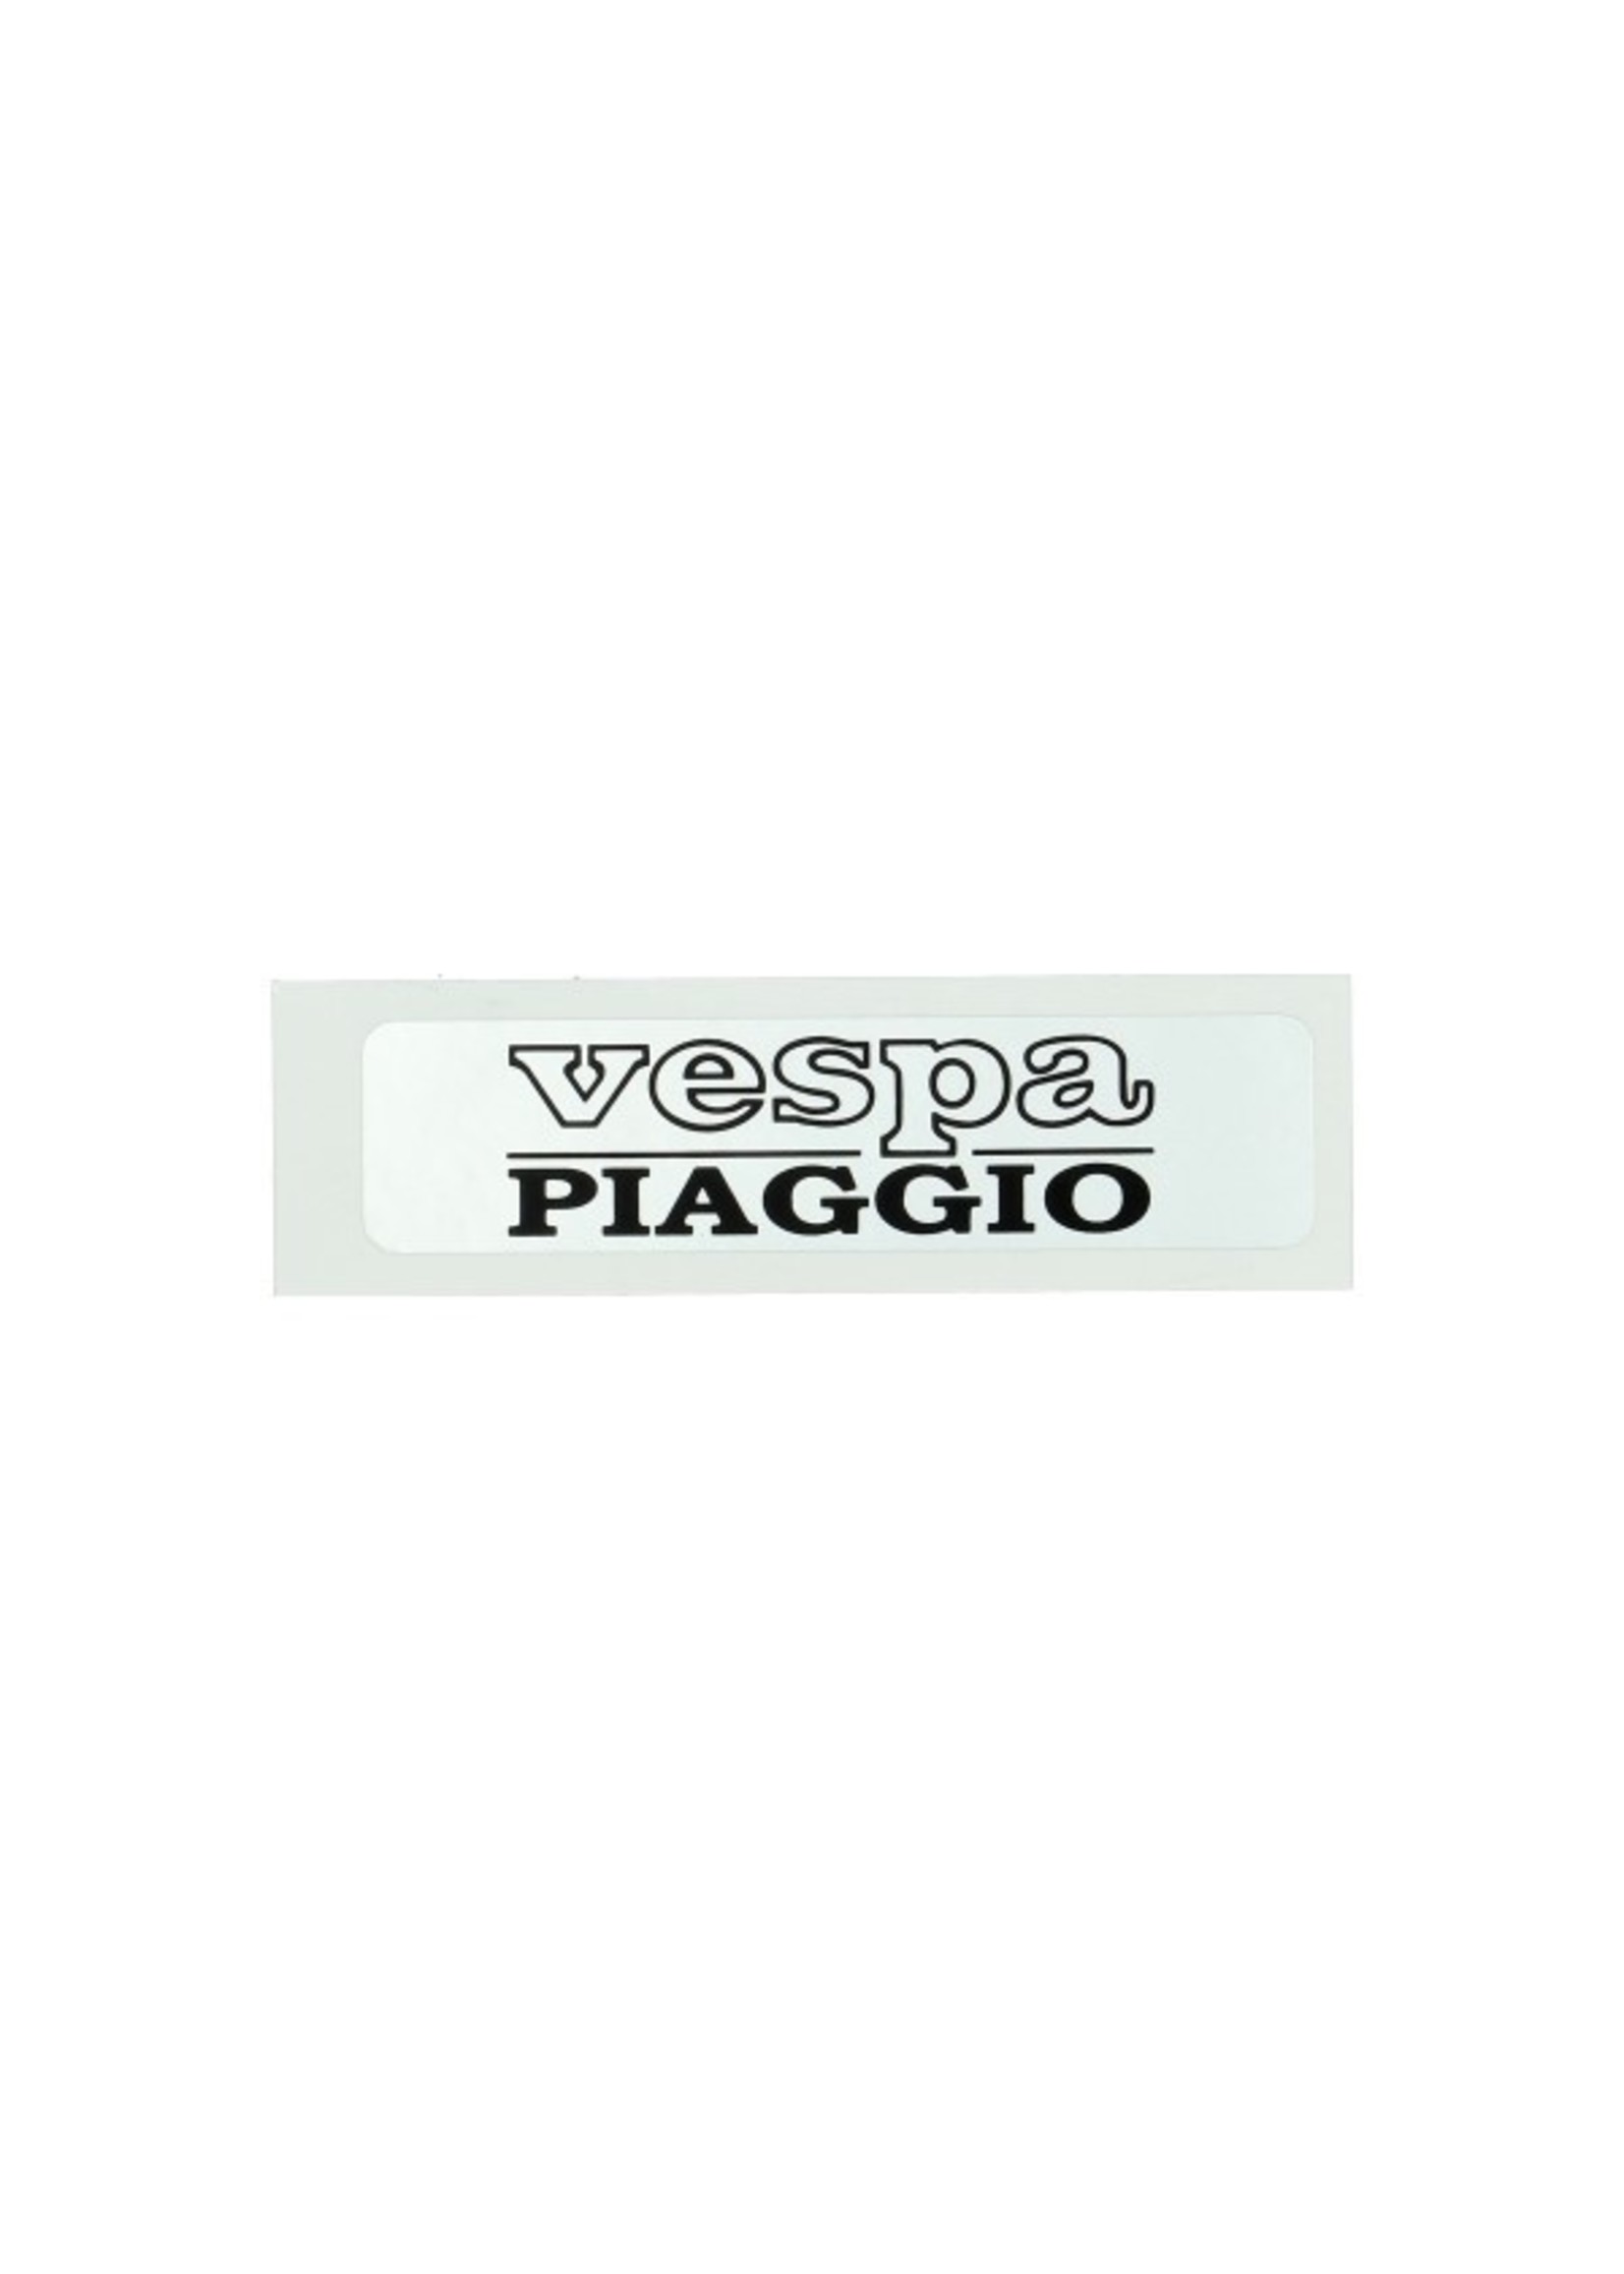 Piaggio sticker vespa piaggio zilver/zwart